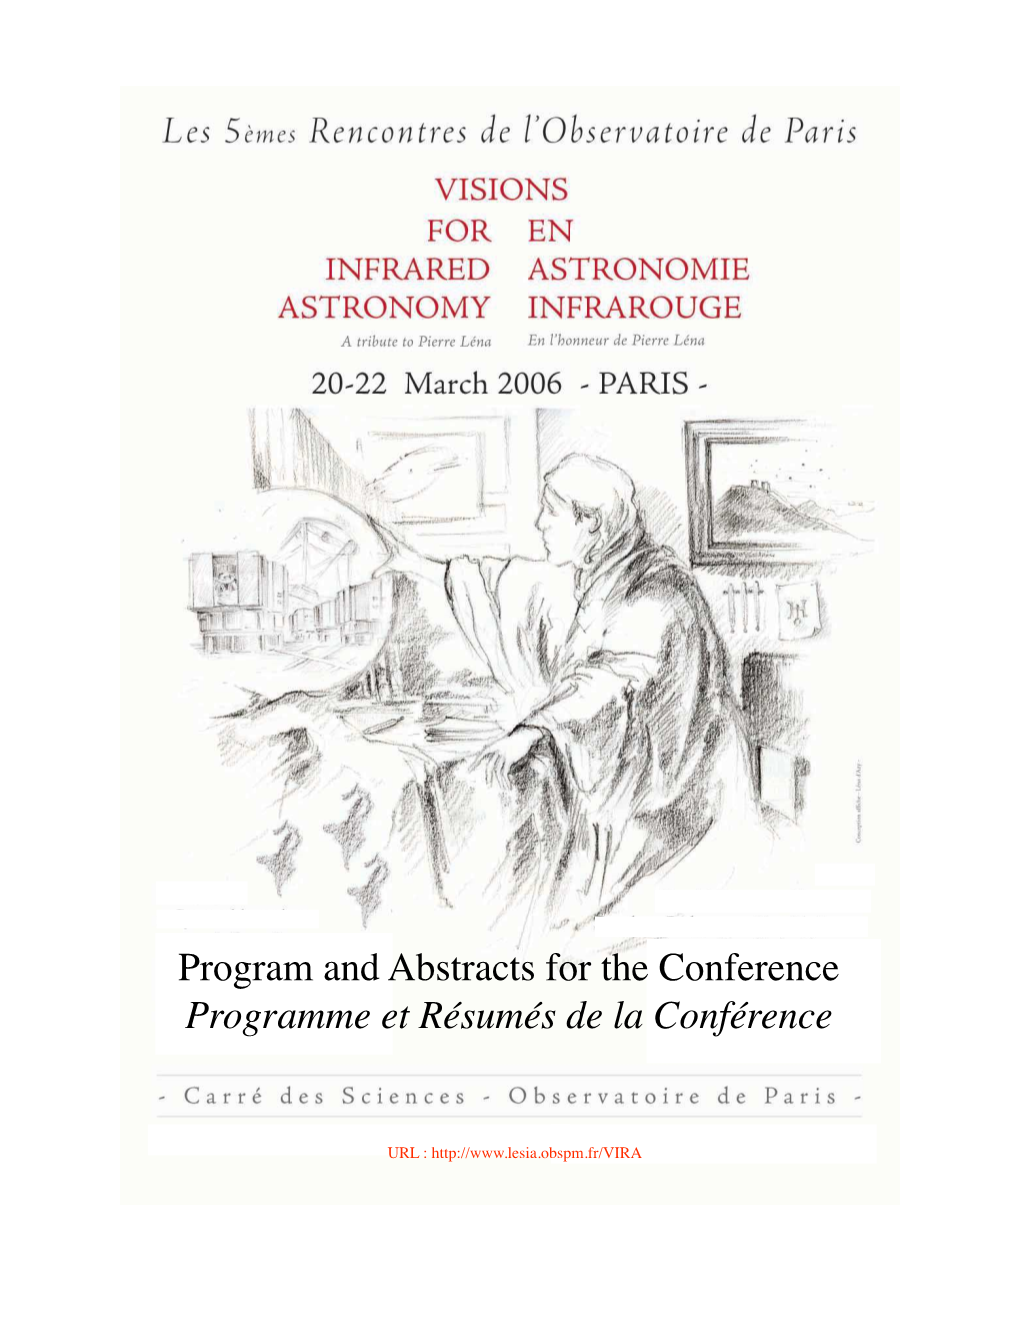 Program and Abstracts for the Conference Programme Et Résumés De La Conférence